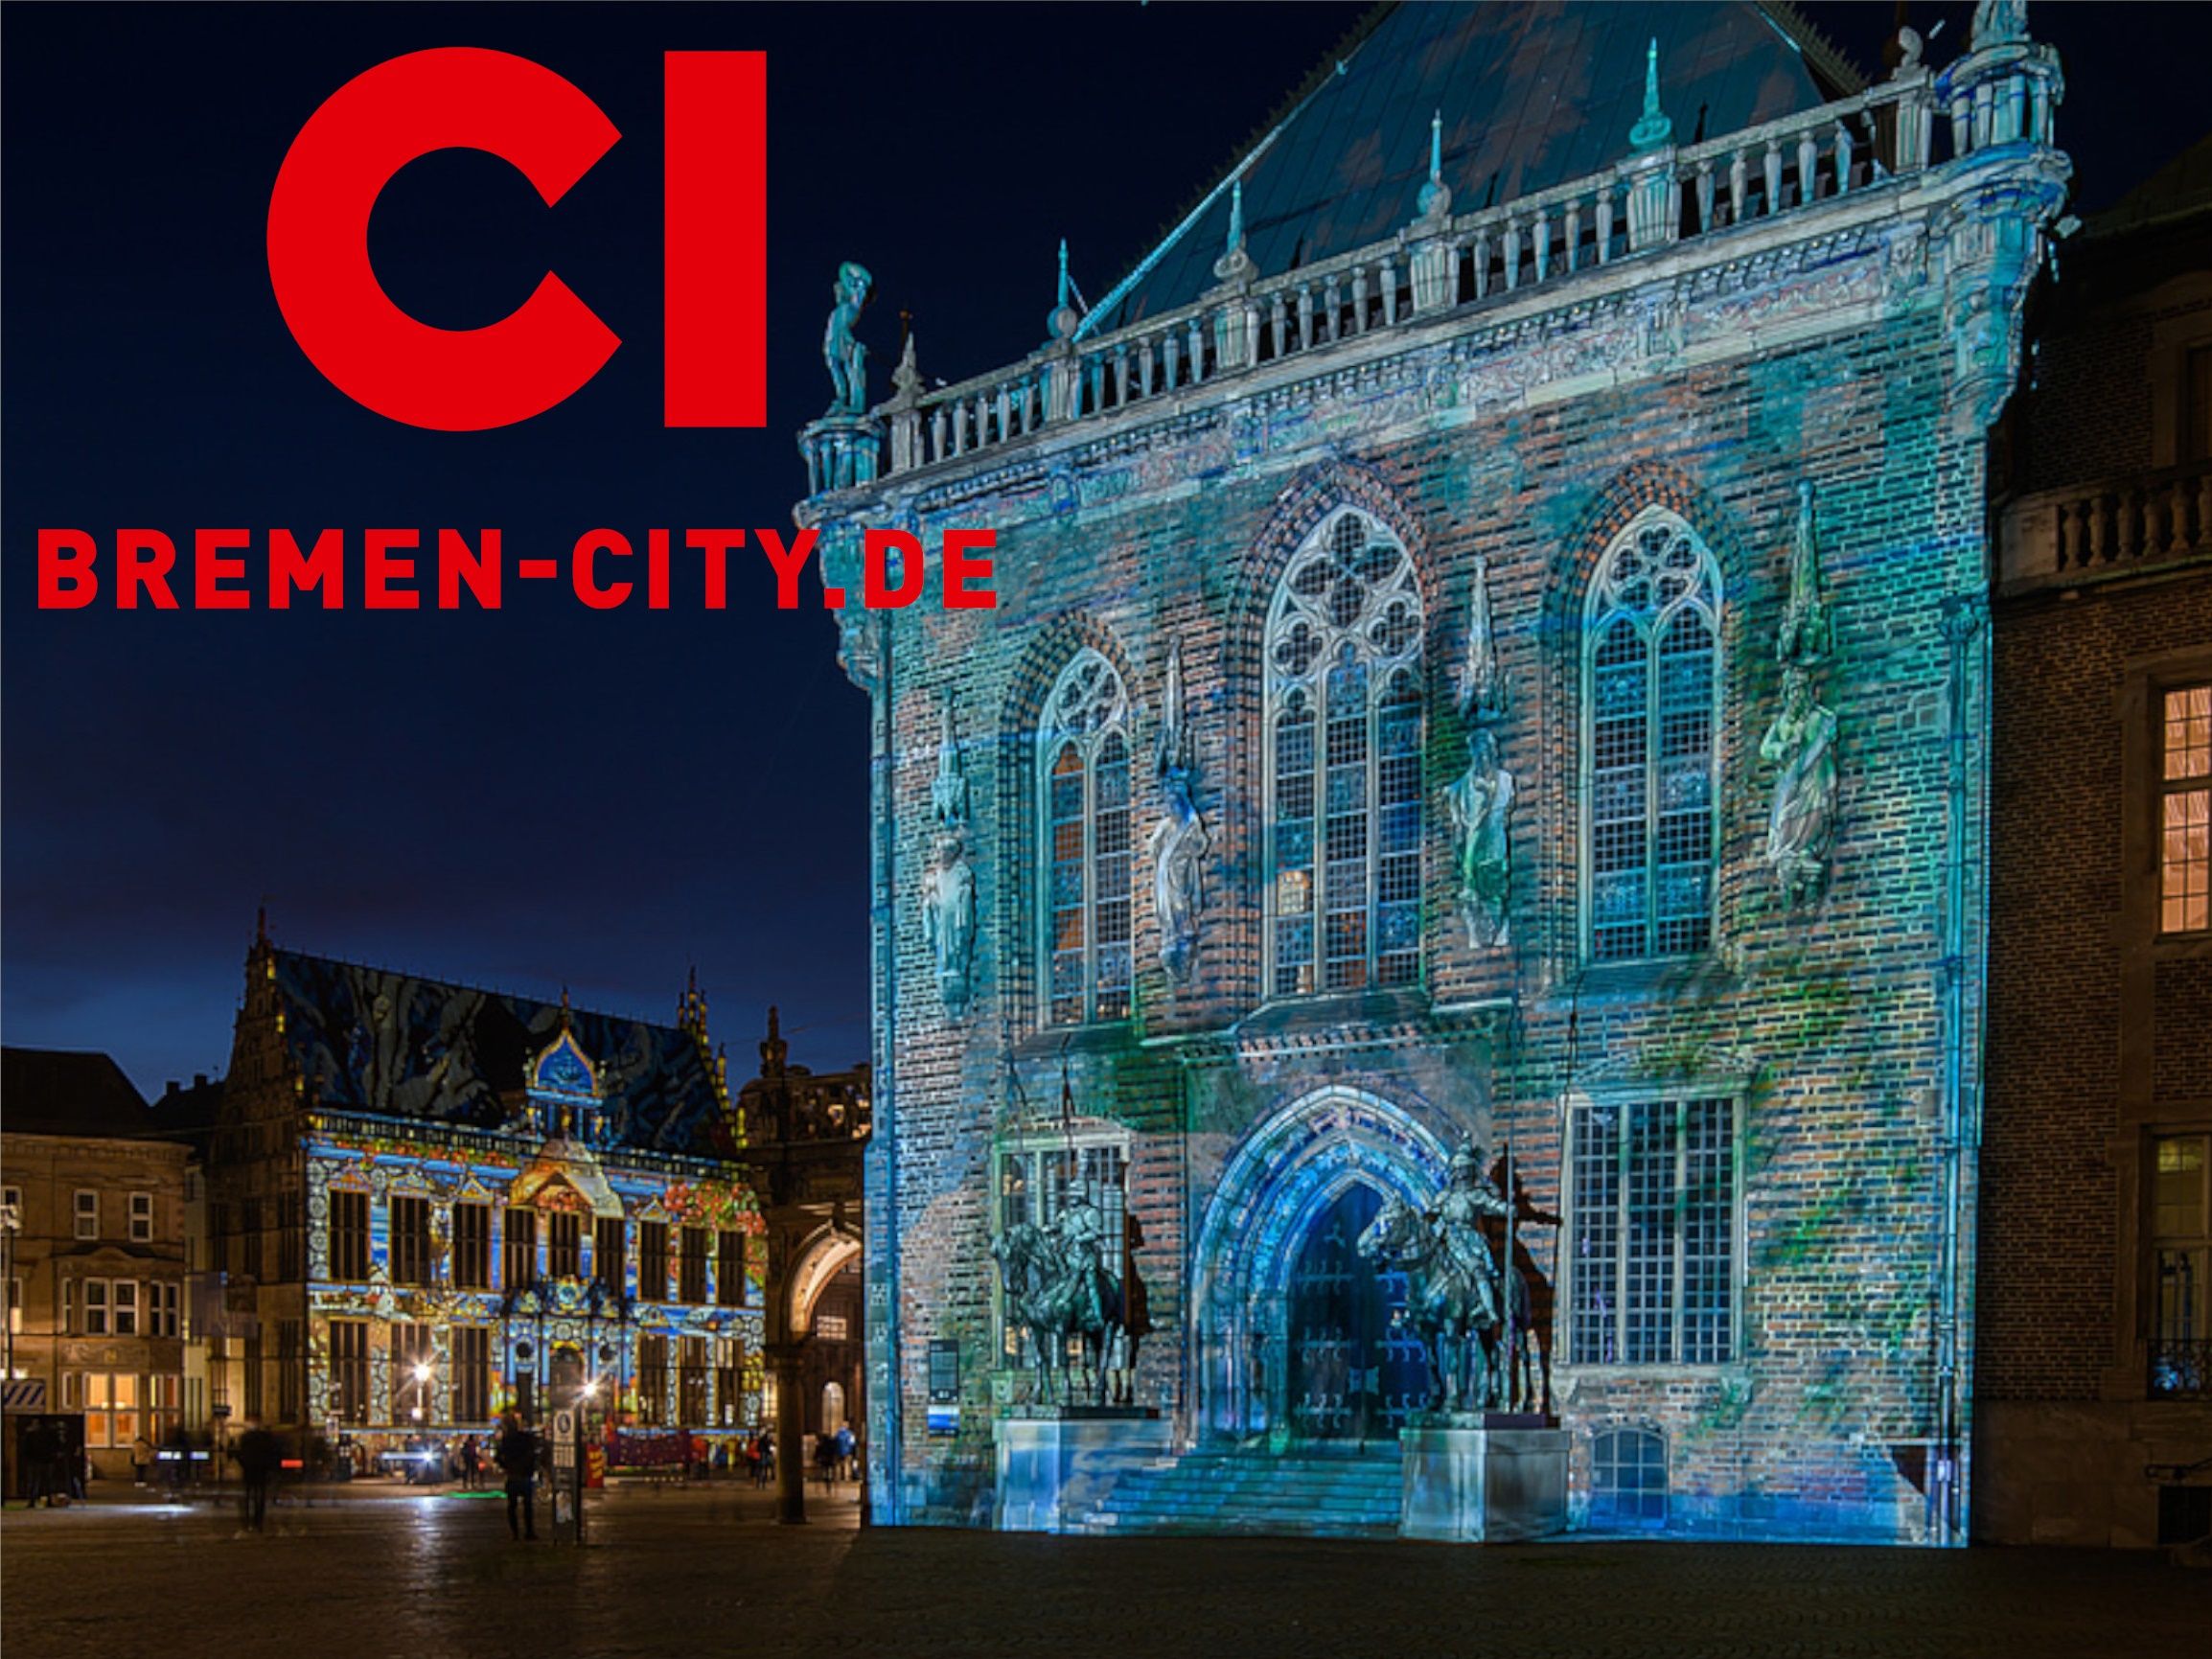  Lichter der City Projektionen, präsentiert von der City-Initiative Bremen - Licht- und Videoinstallationen